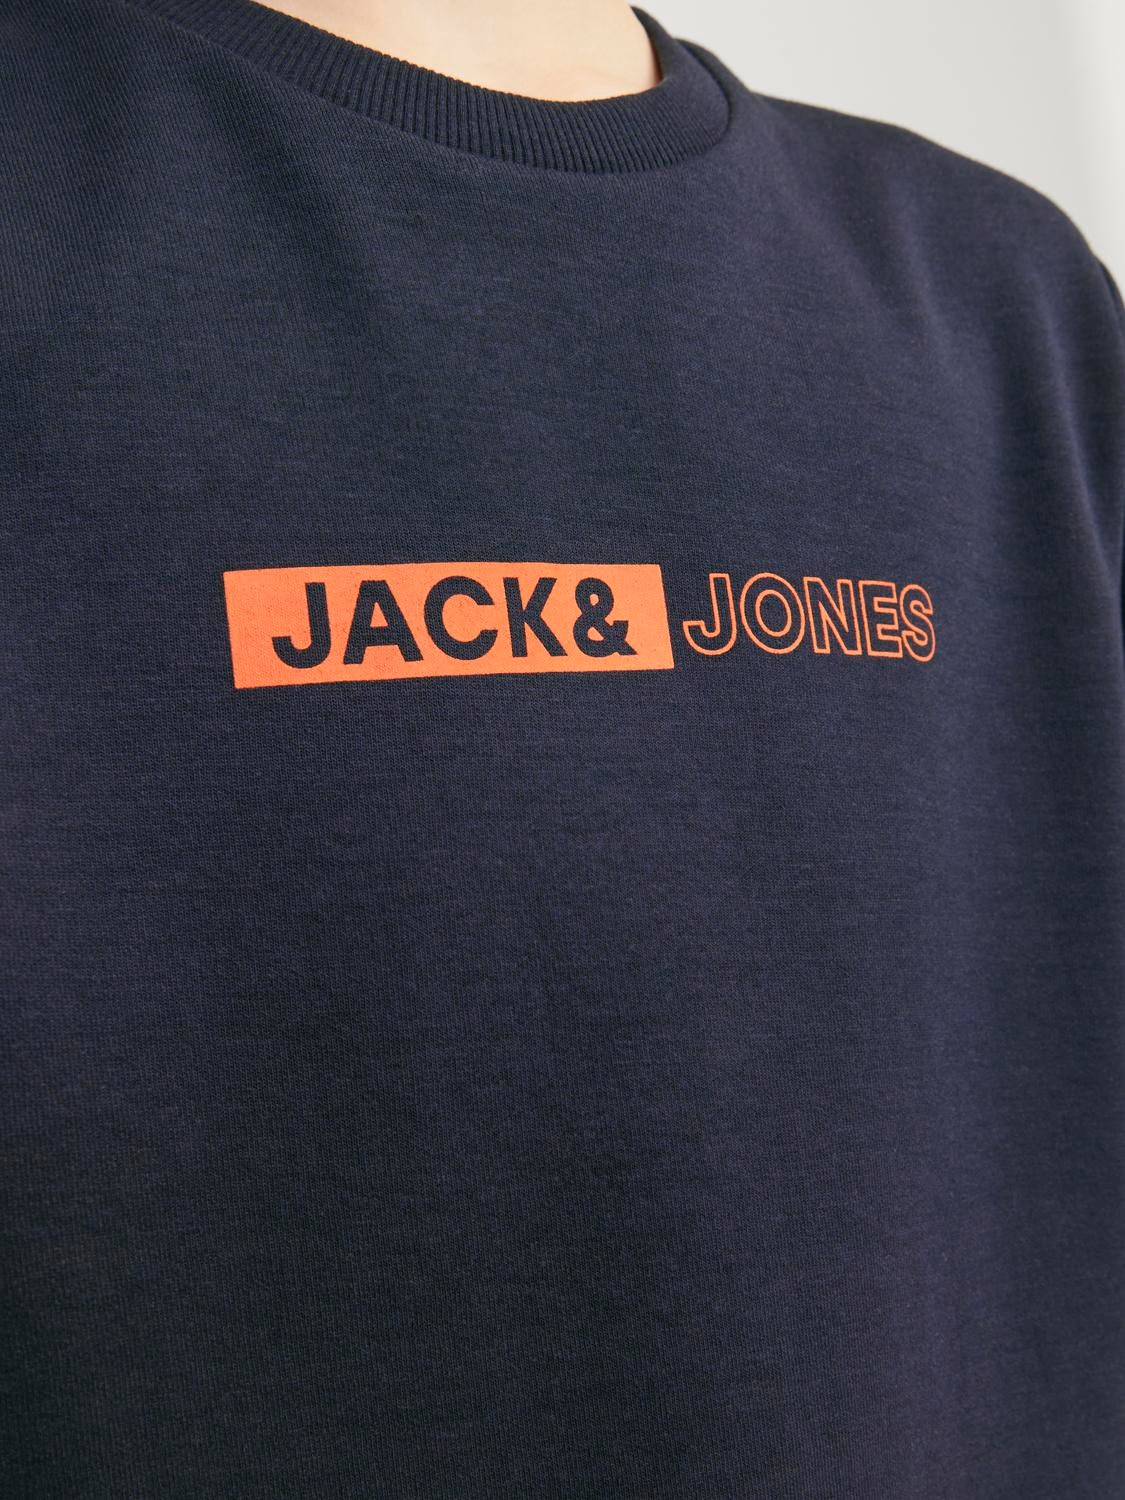 Jack & Jones Printed Crew neck Sweatshirt For boys -Sky Captain - 12255504